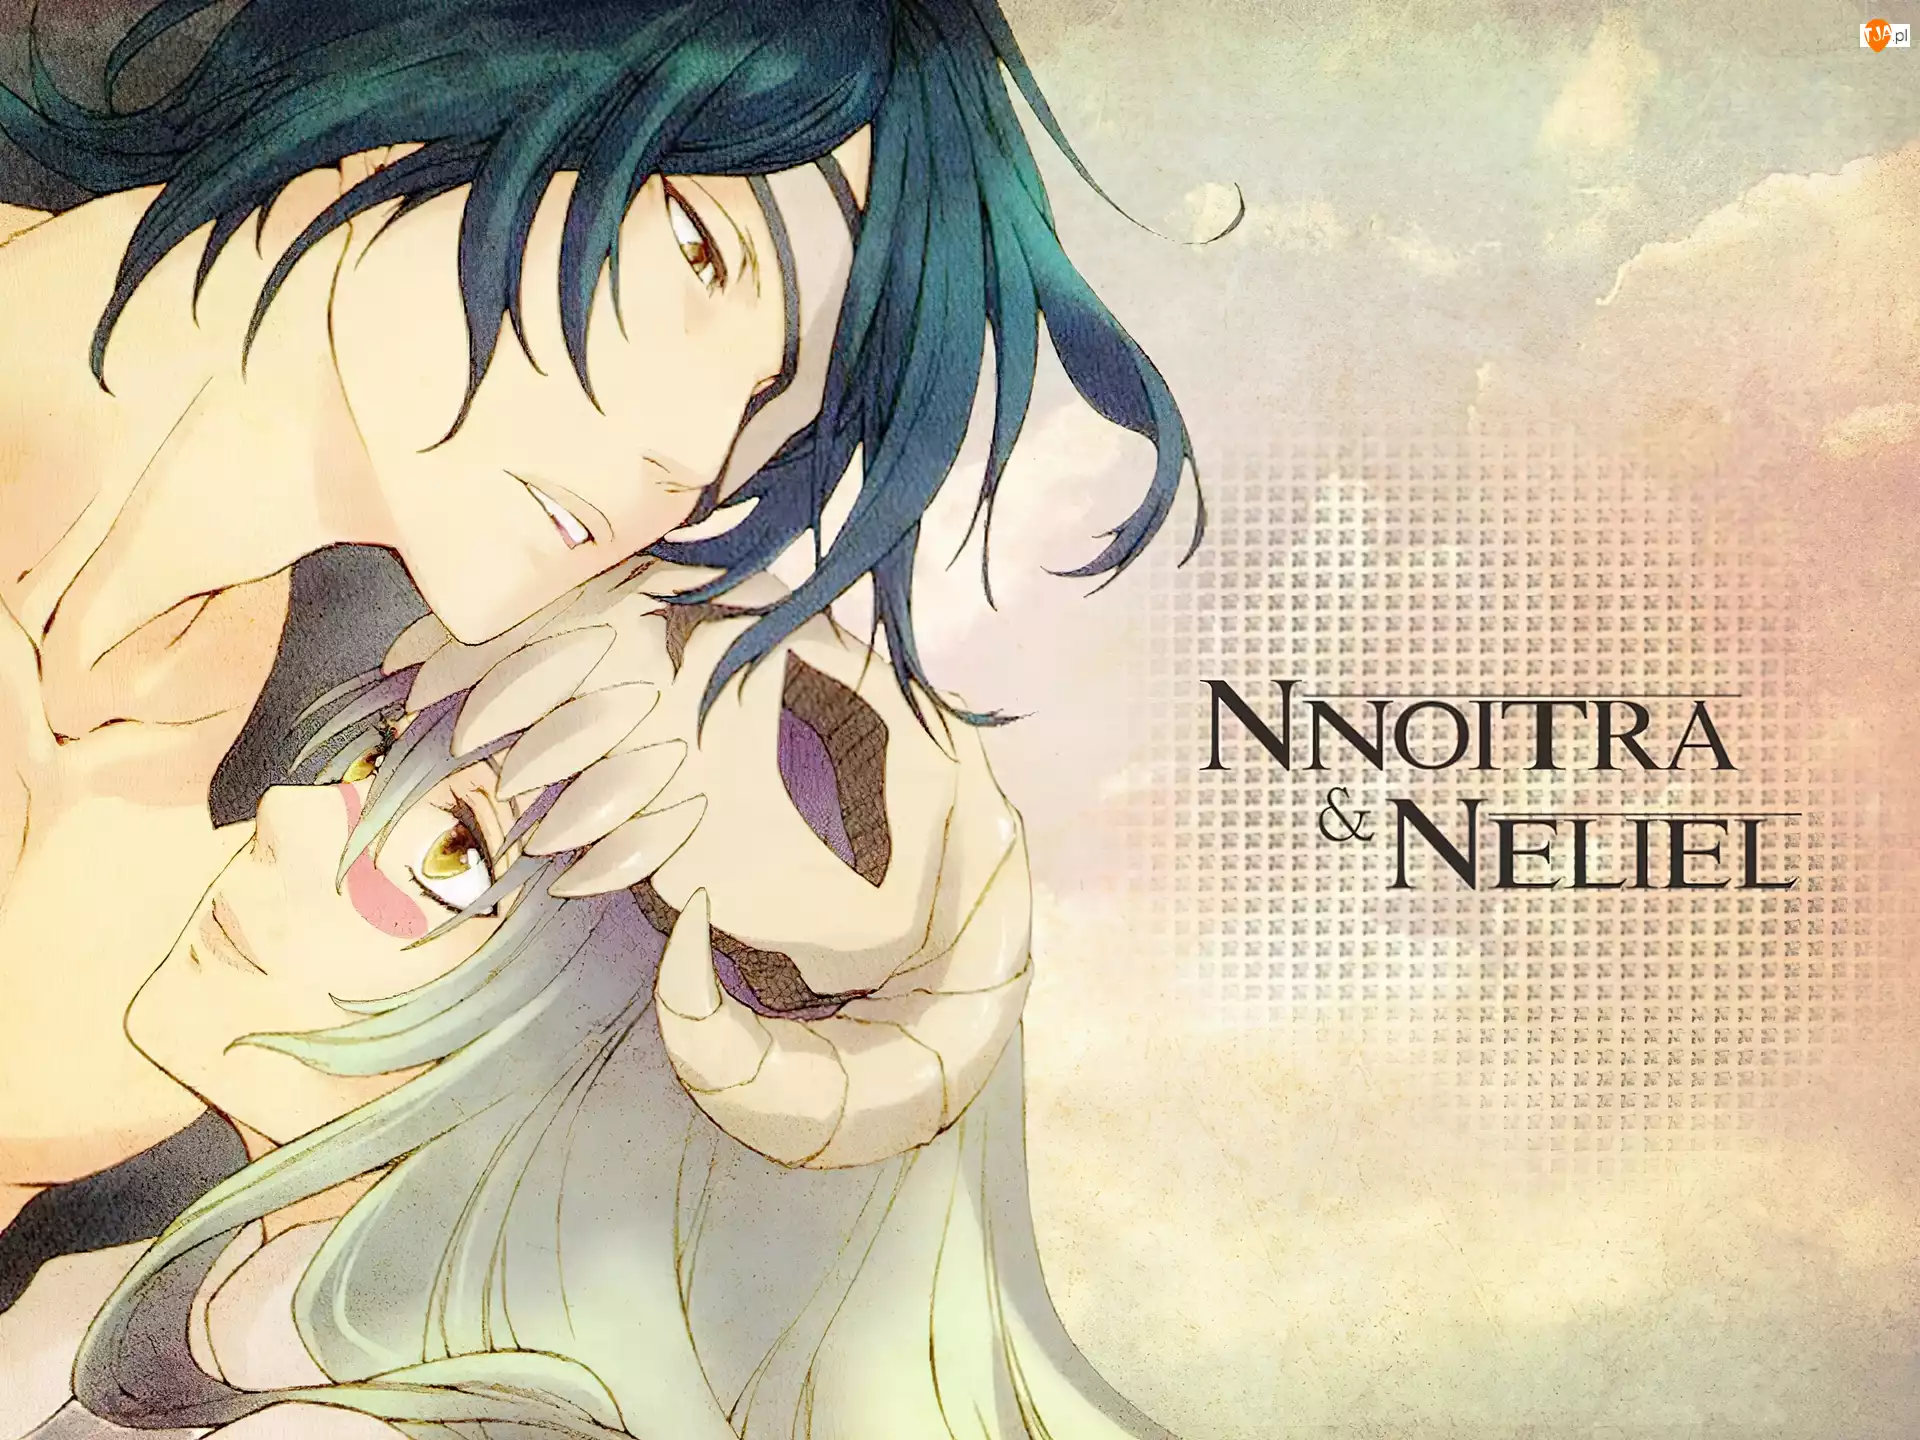 Miłość, Nnoitra, Neliel